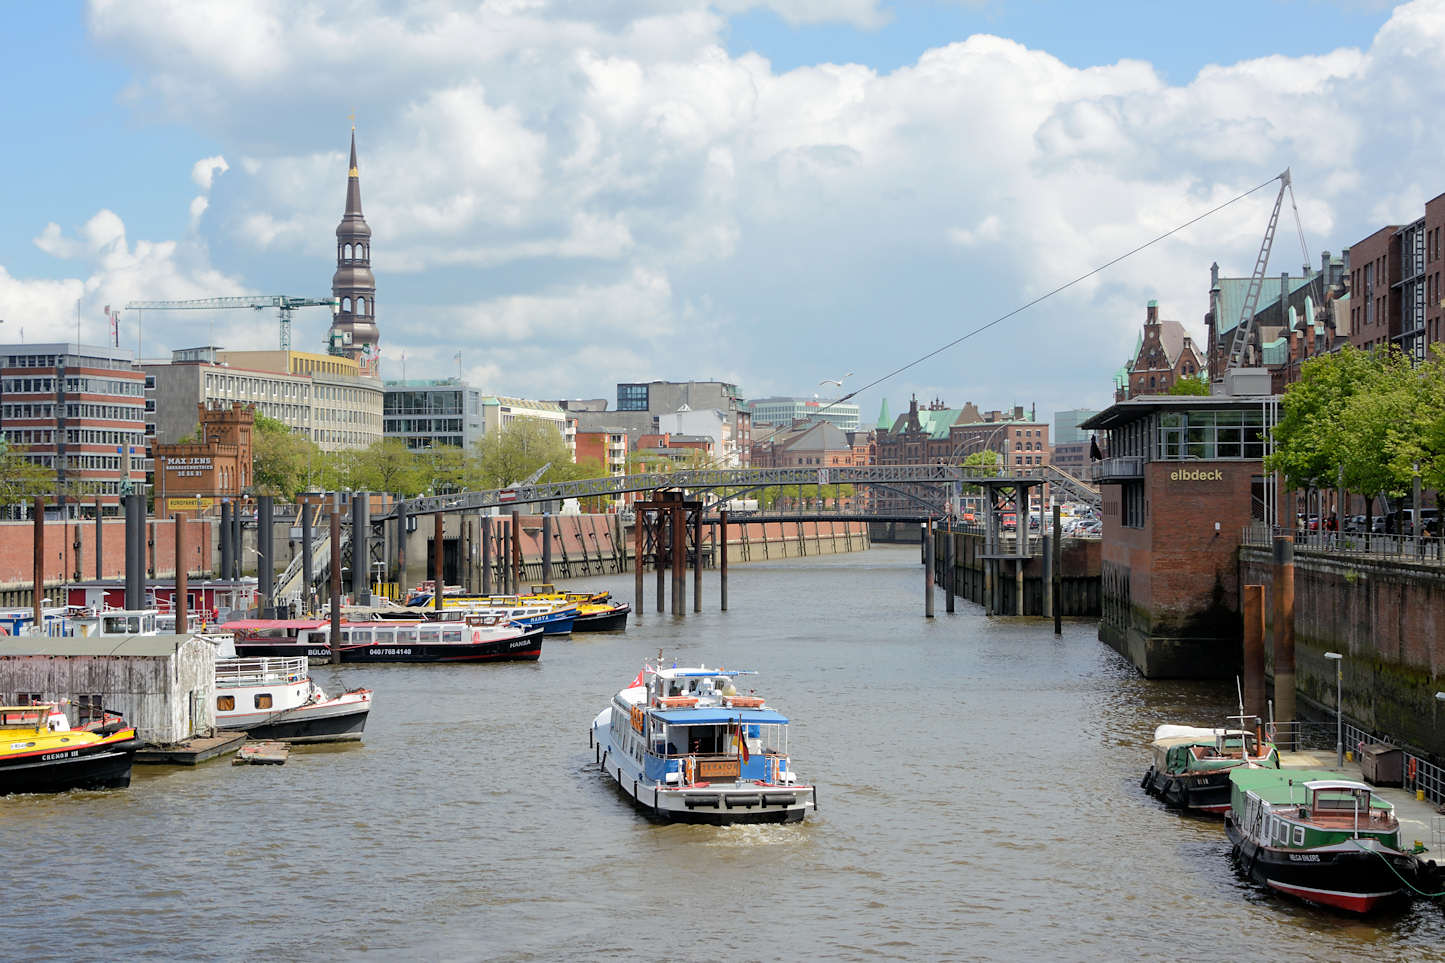 7490 Blick über den Binnenhafen zum Zollkanal - Fahrgastschiff fährt in den Kanal. | Binnenhafen - historisches Hafenbecken in der Hamburger Altstadt.